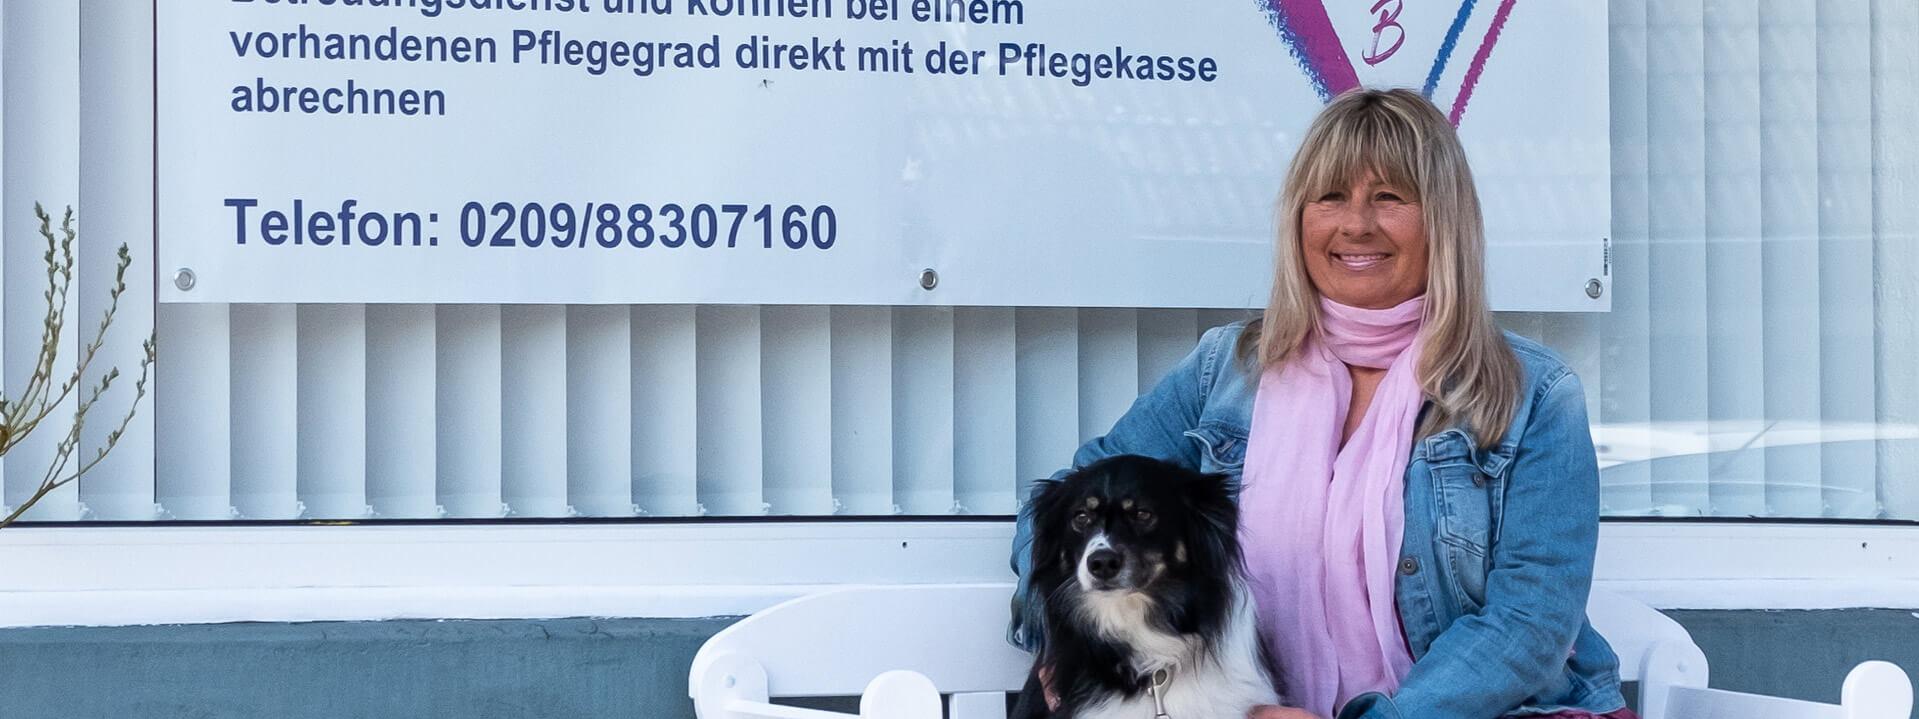 Heike Becker, eine Frau mittleren Alters, sitzt mit einem Hund vor einem Schild mit der Aufschrift "Seniorenbetreuung mit Herz".